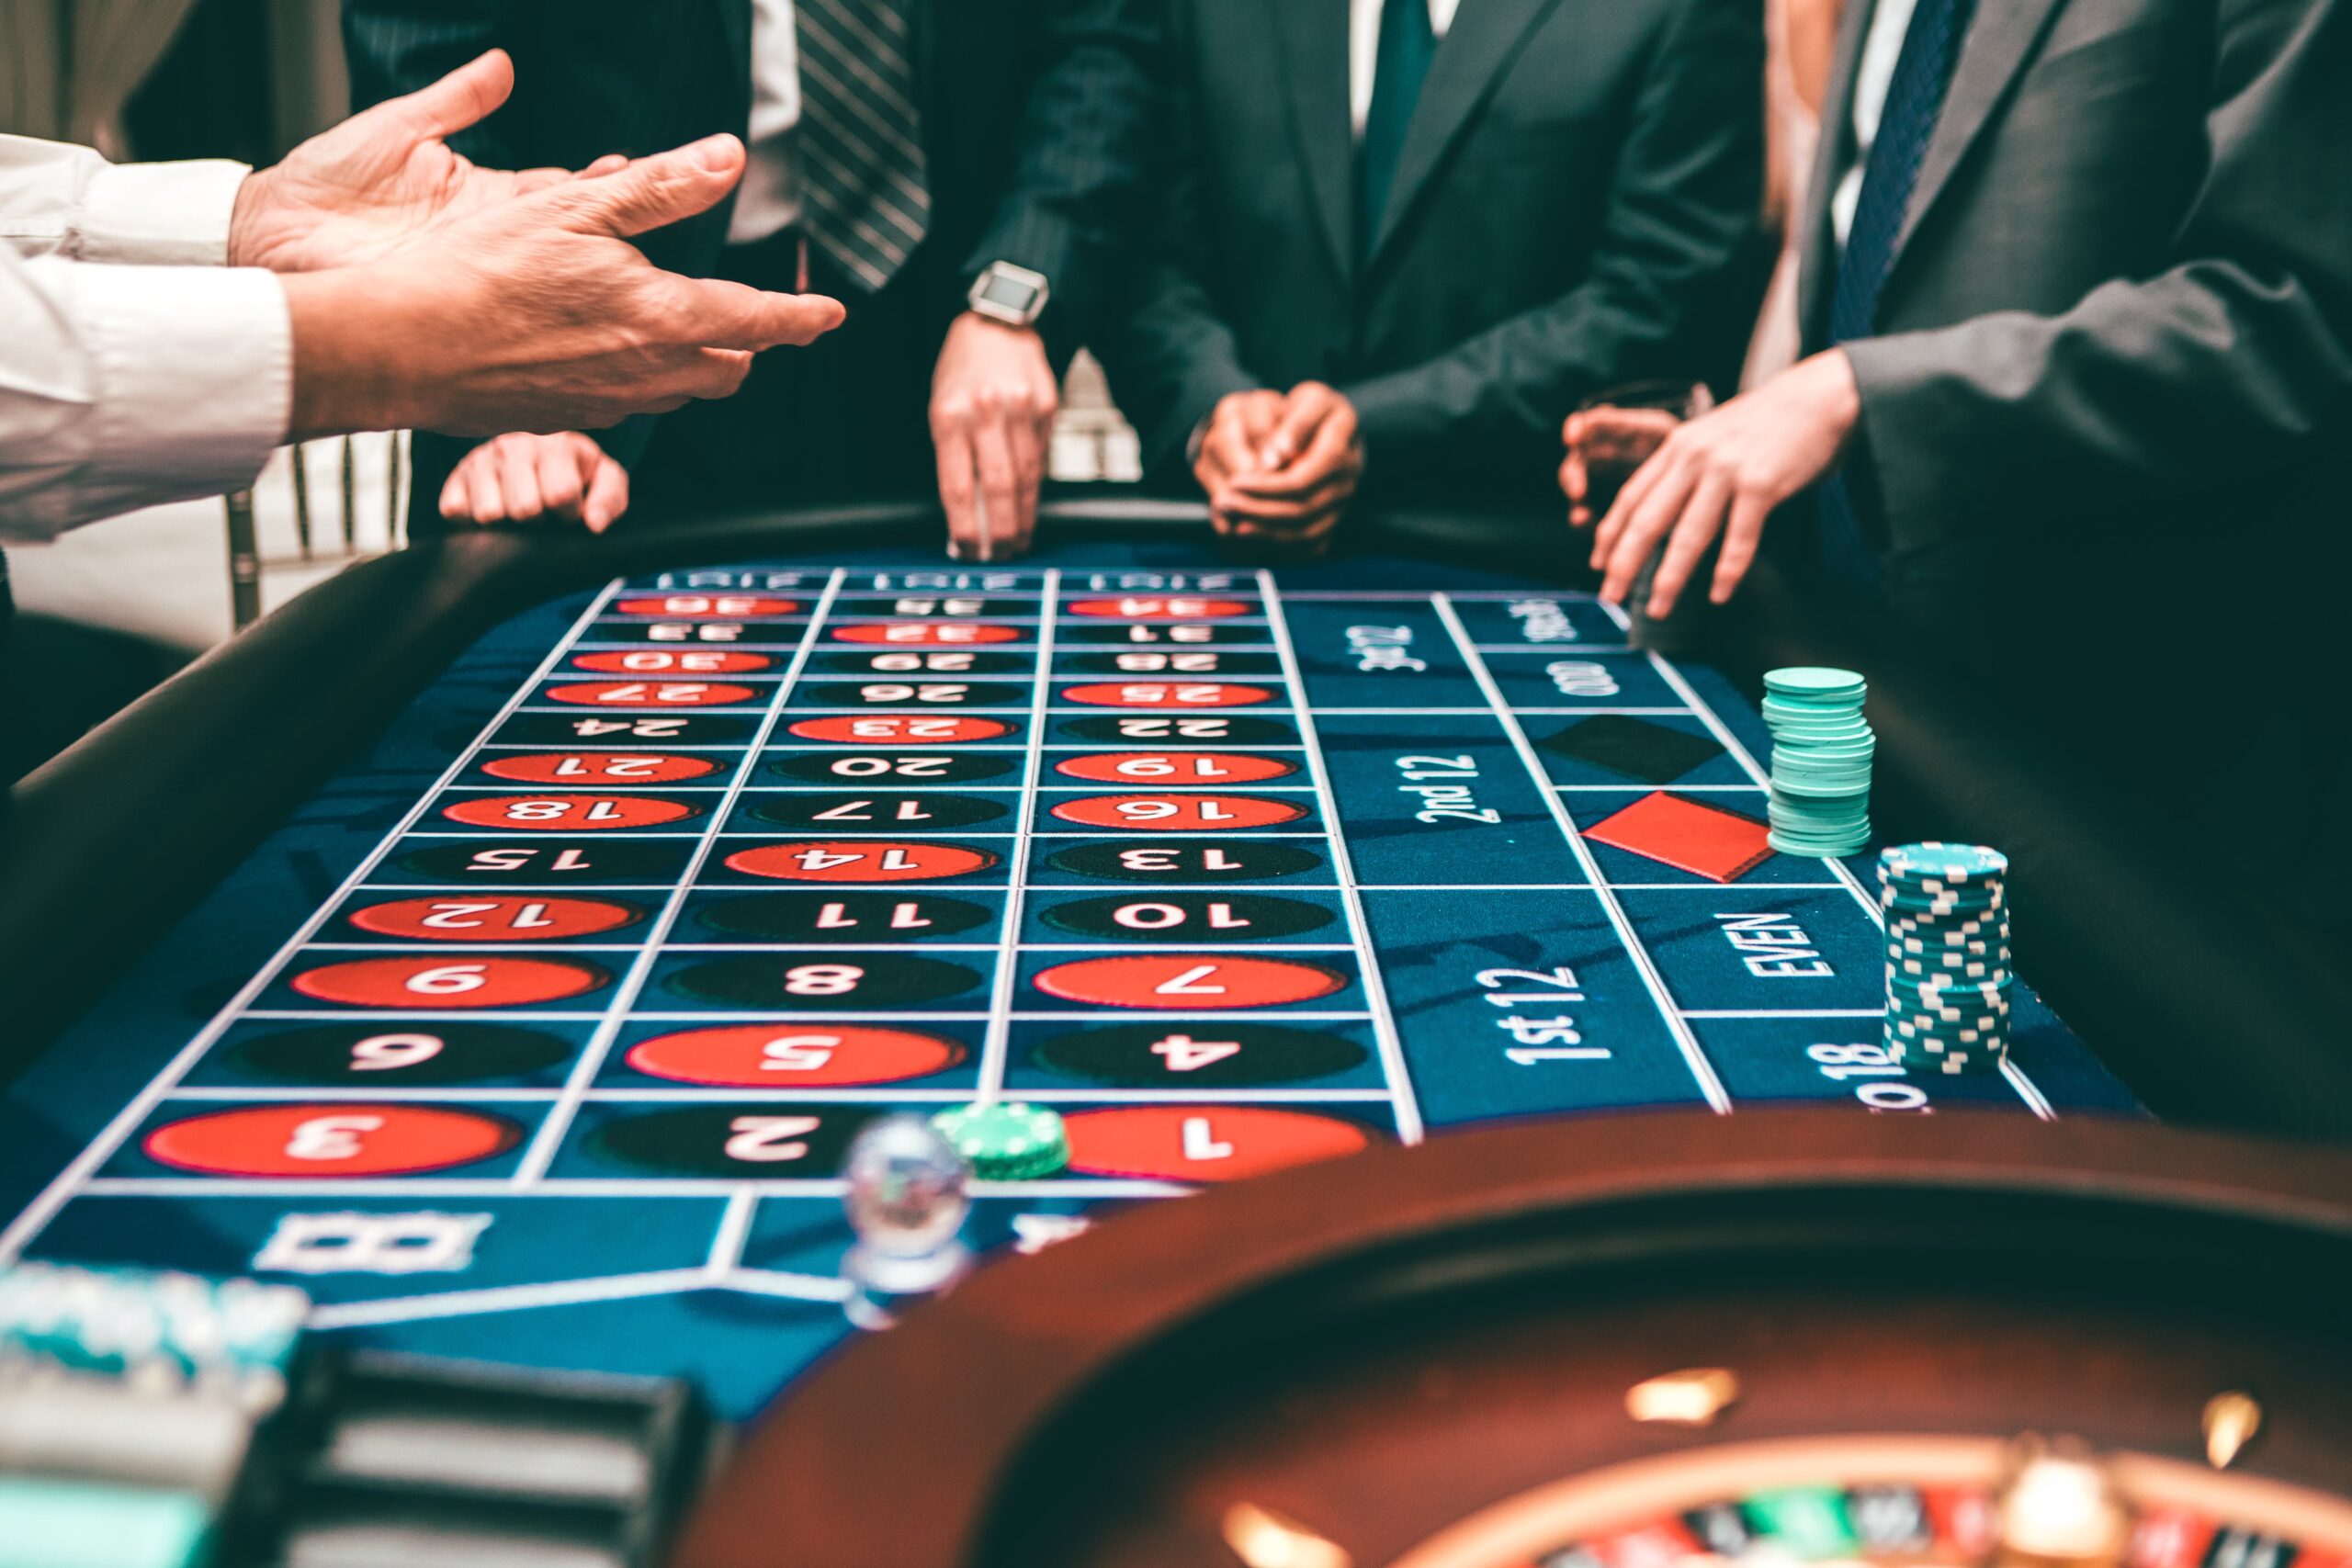 From Online Gambling to Entrepreneurship Startups Inspired by Casinos